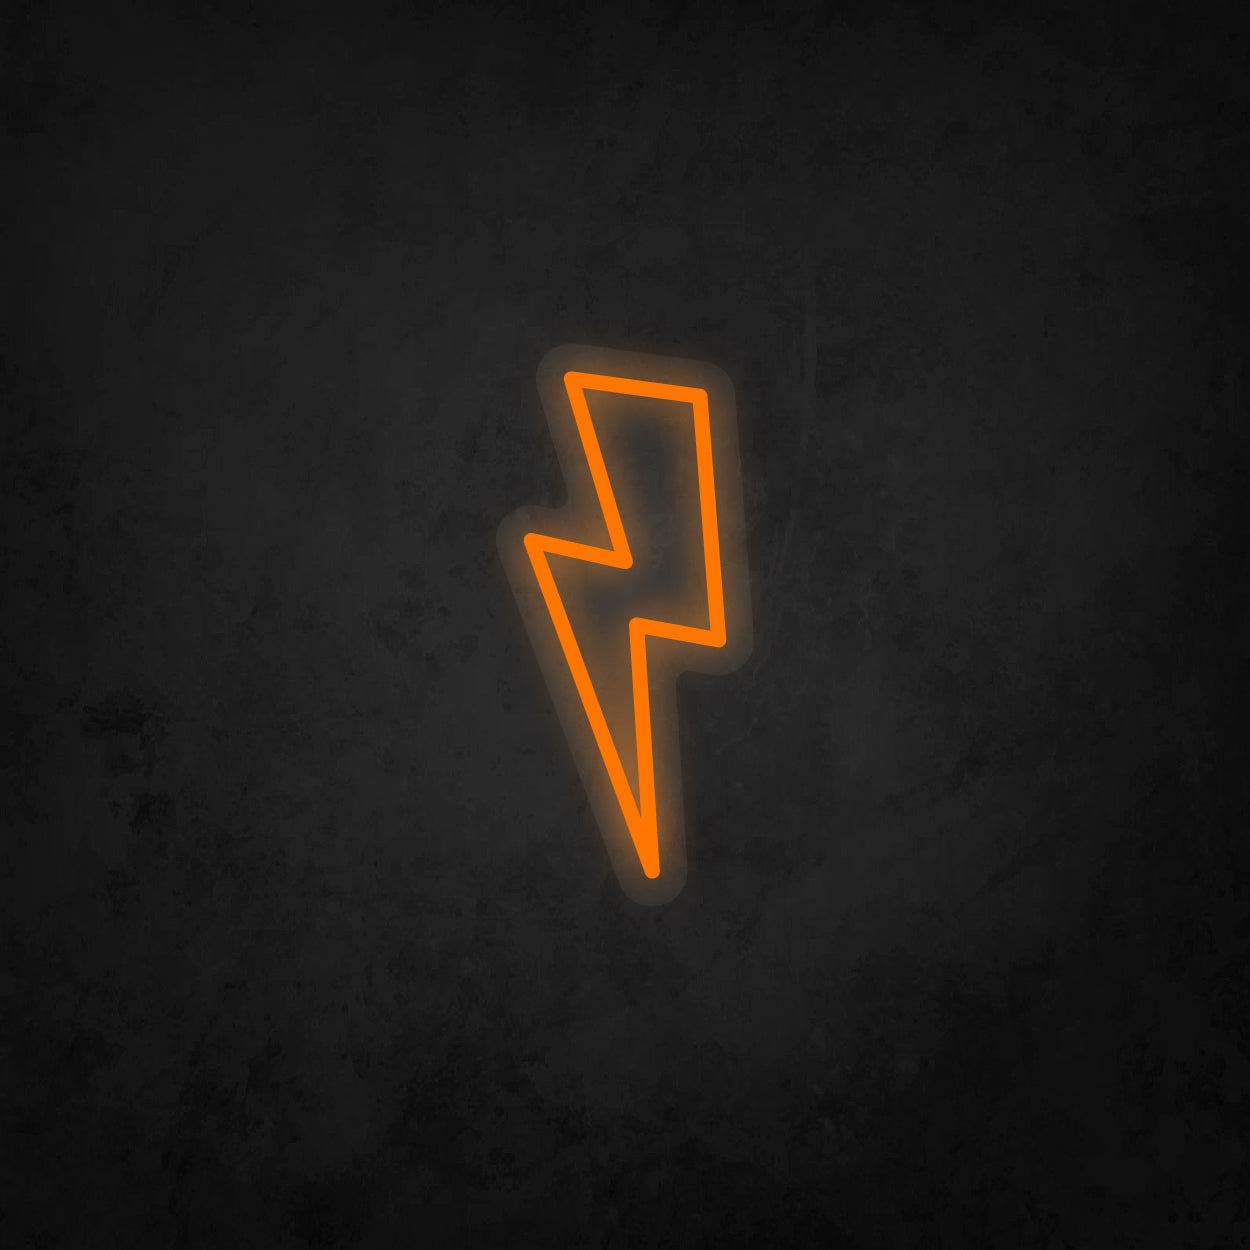 LED Neon Sign - Lightning Bolt Small